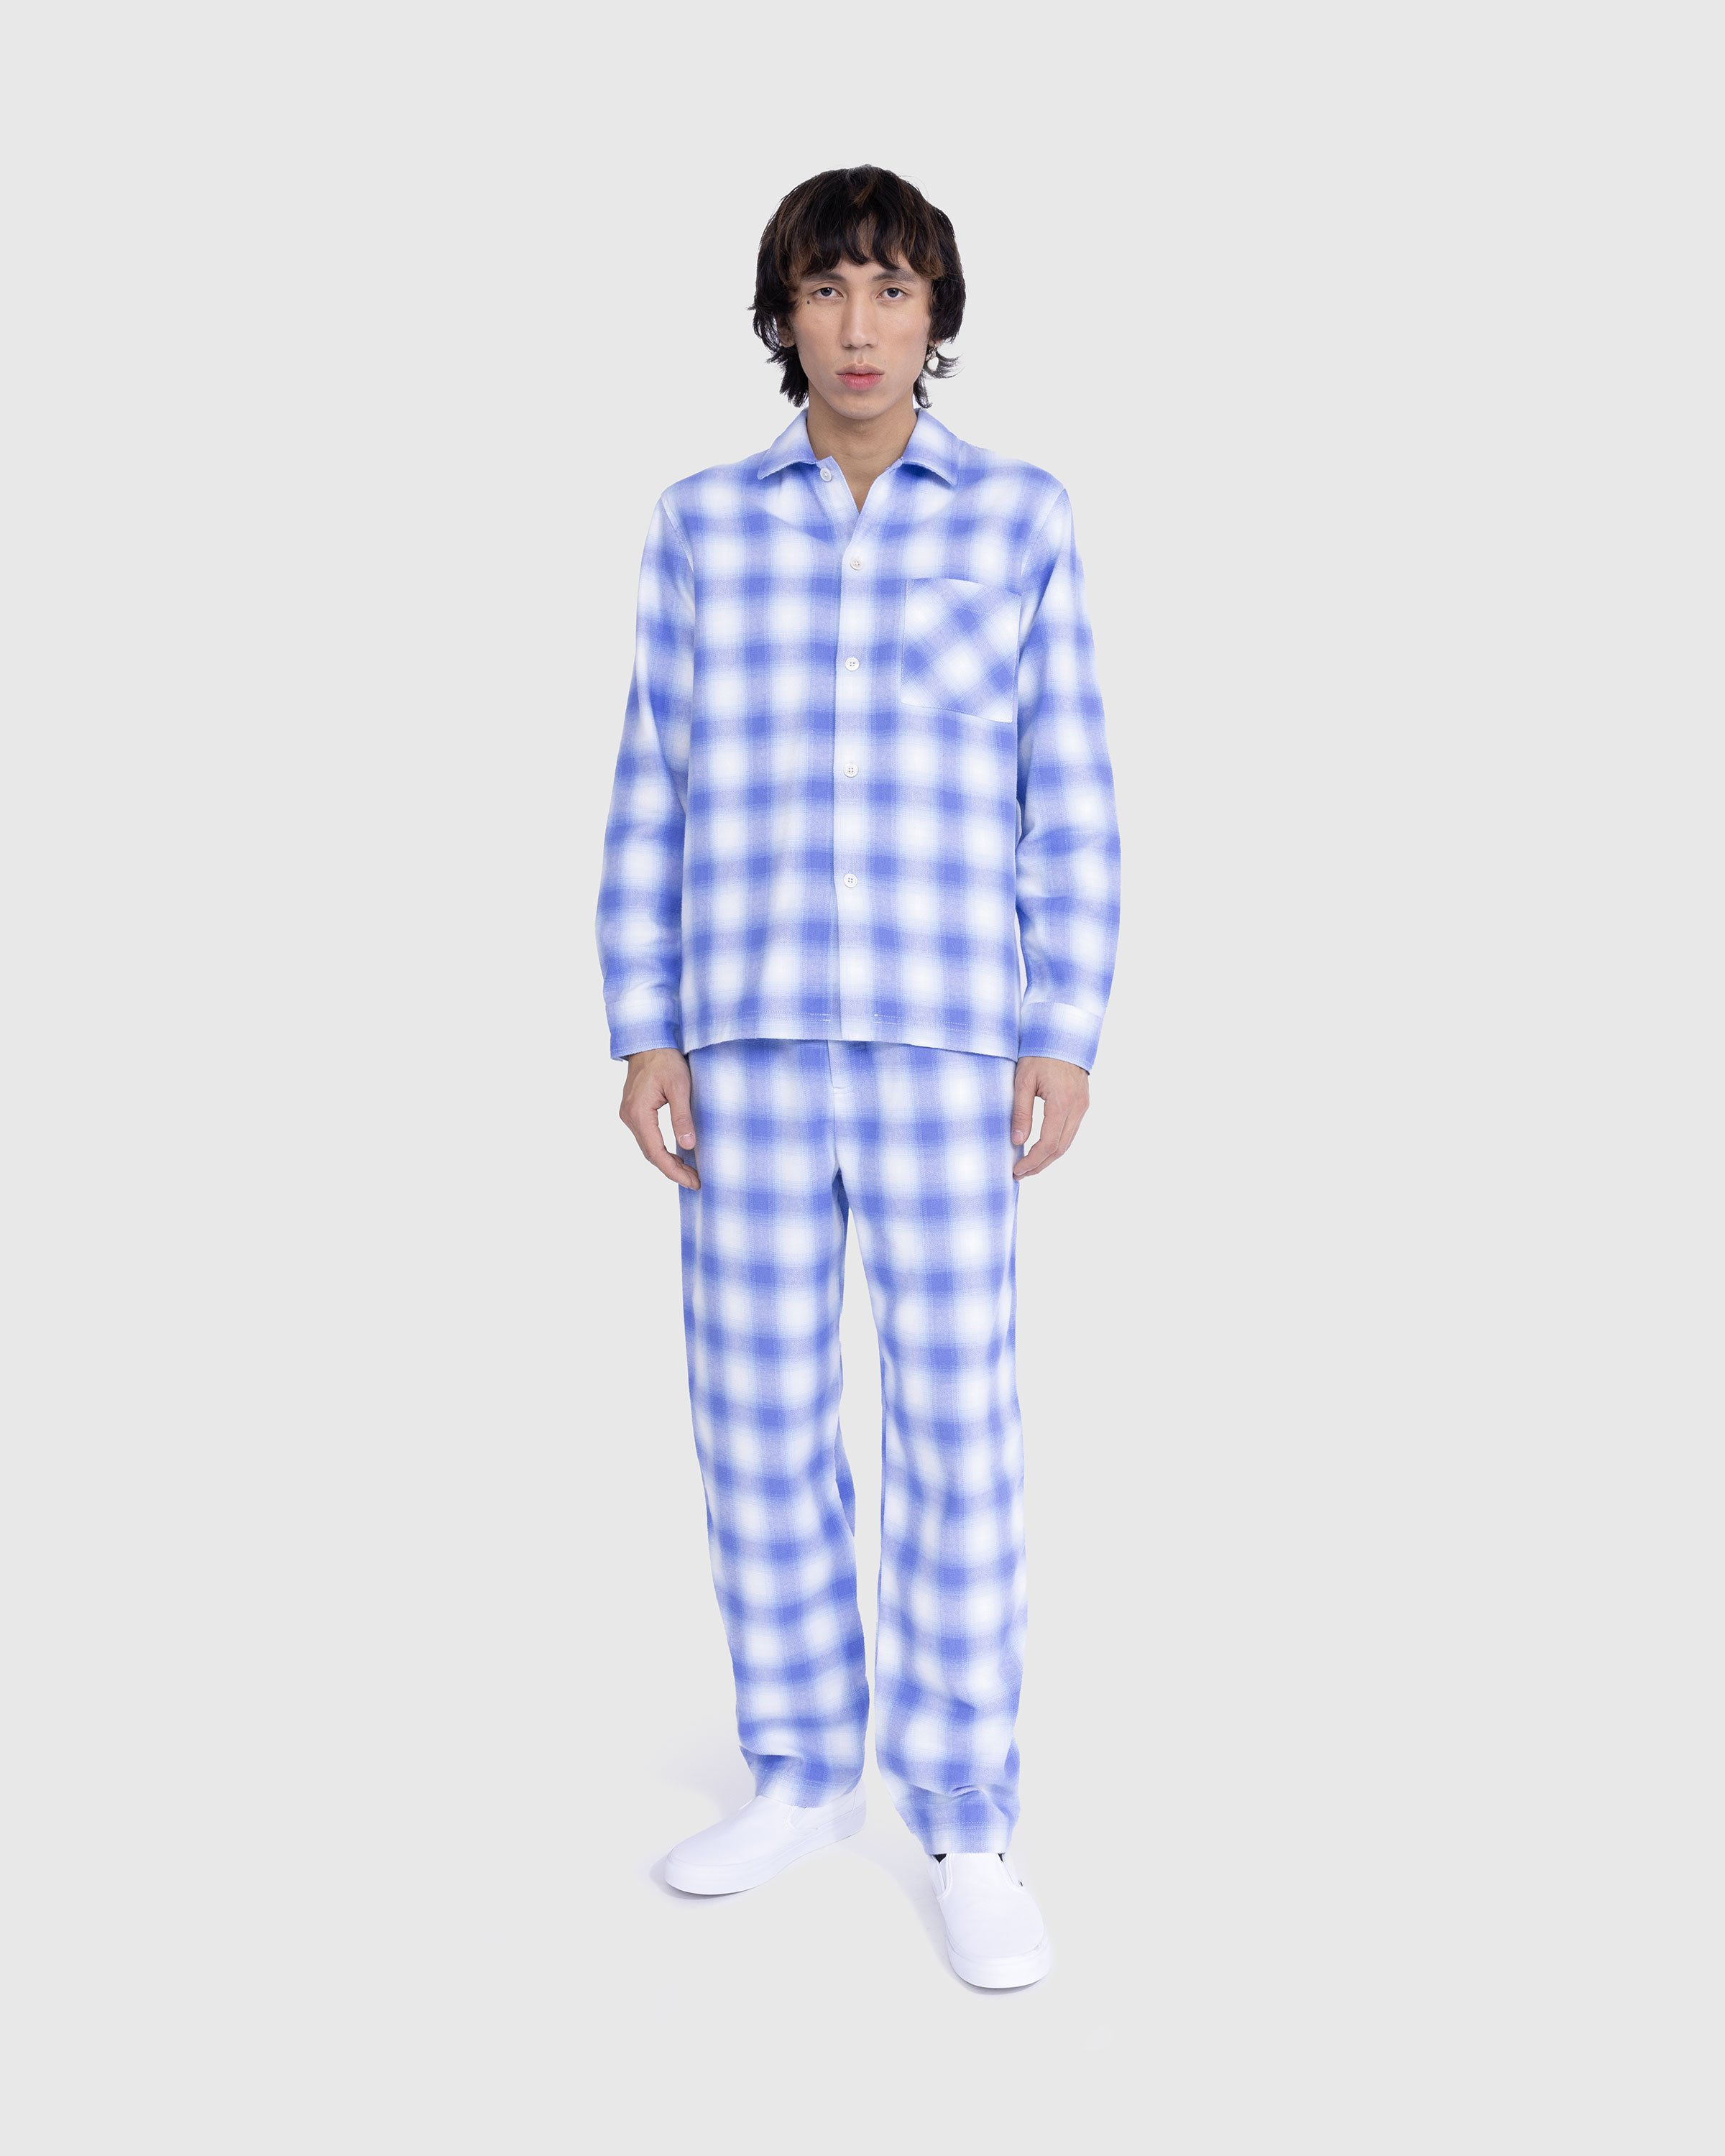 Tekla - Flannel Pyjamas Pants Light Blue Plaid - Clothing - Blue - Image 2